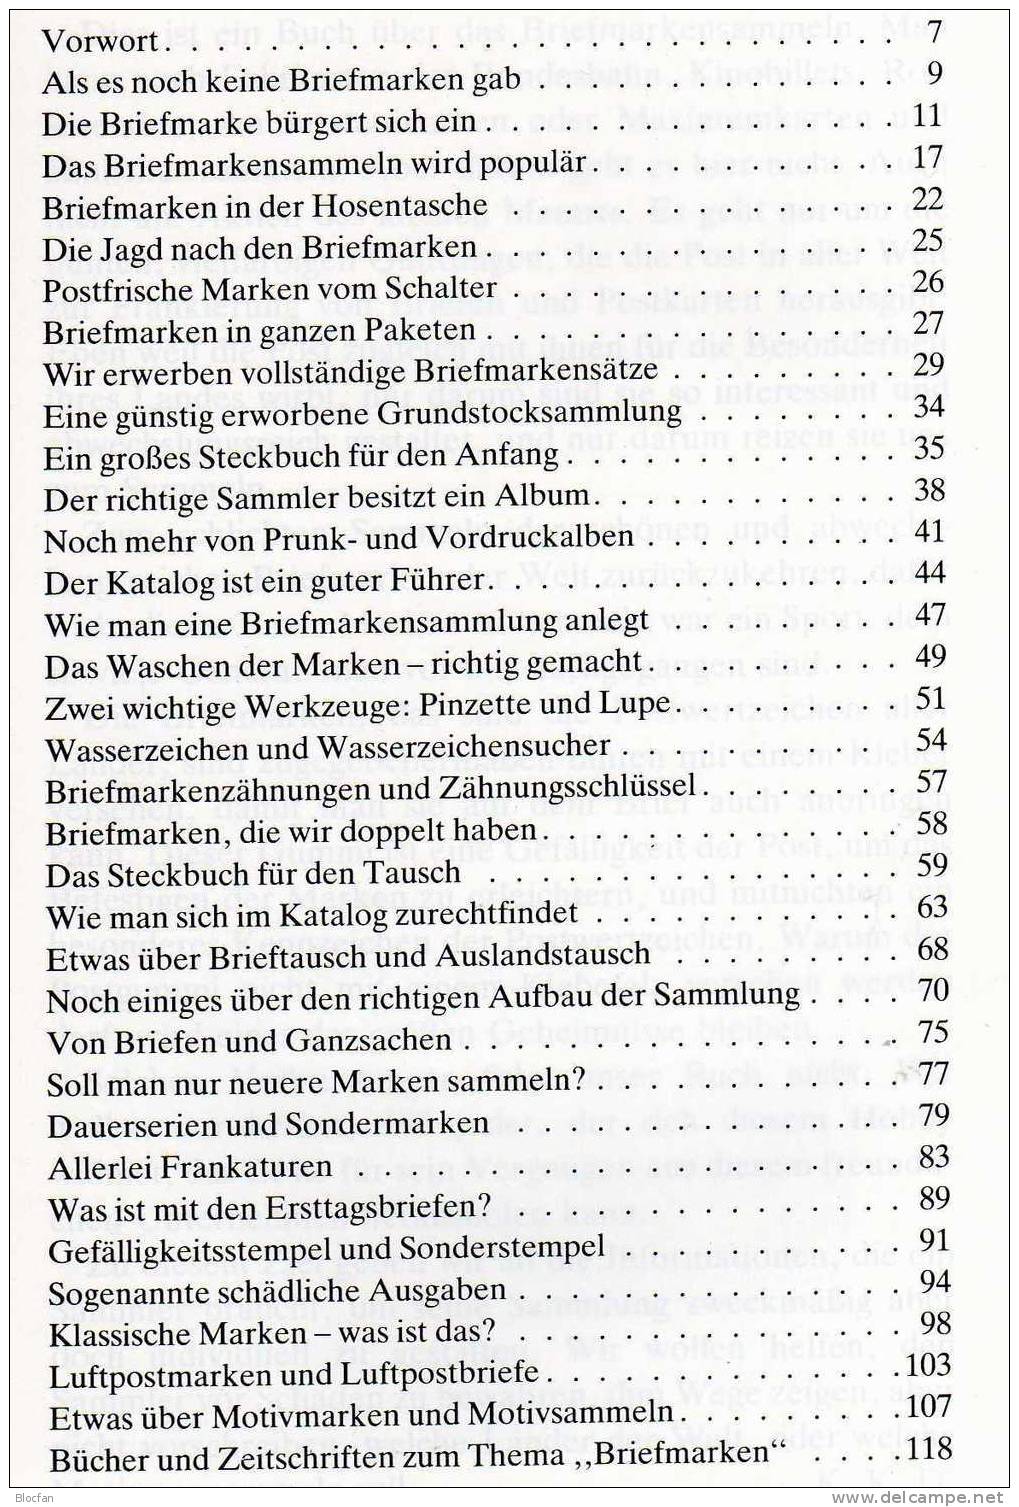 Handbuch Für Den Briefmarkensammler 1990 Neu 5€ Mit Motivbeschreibungen Zahlreiche Bilder Anleitung Für Sammler Der Welt - Ediciones Originales